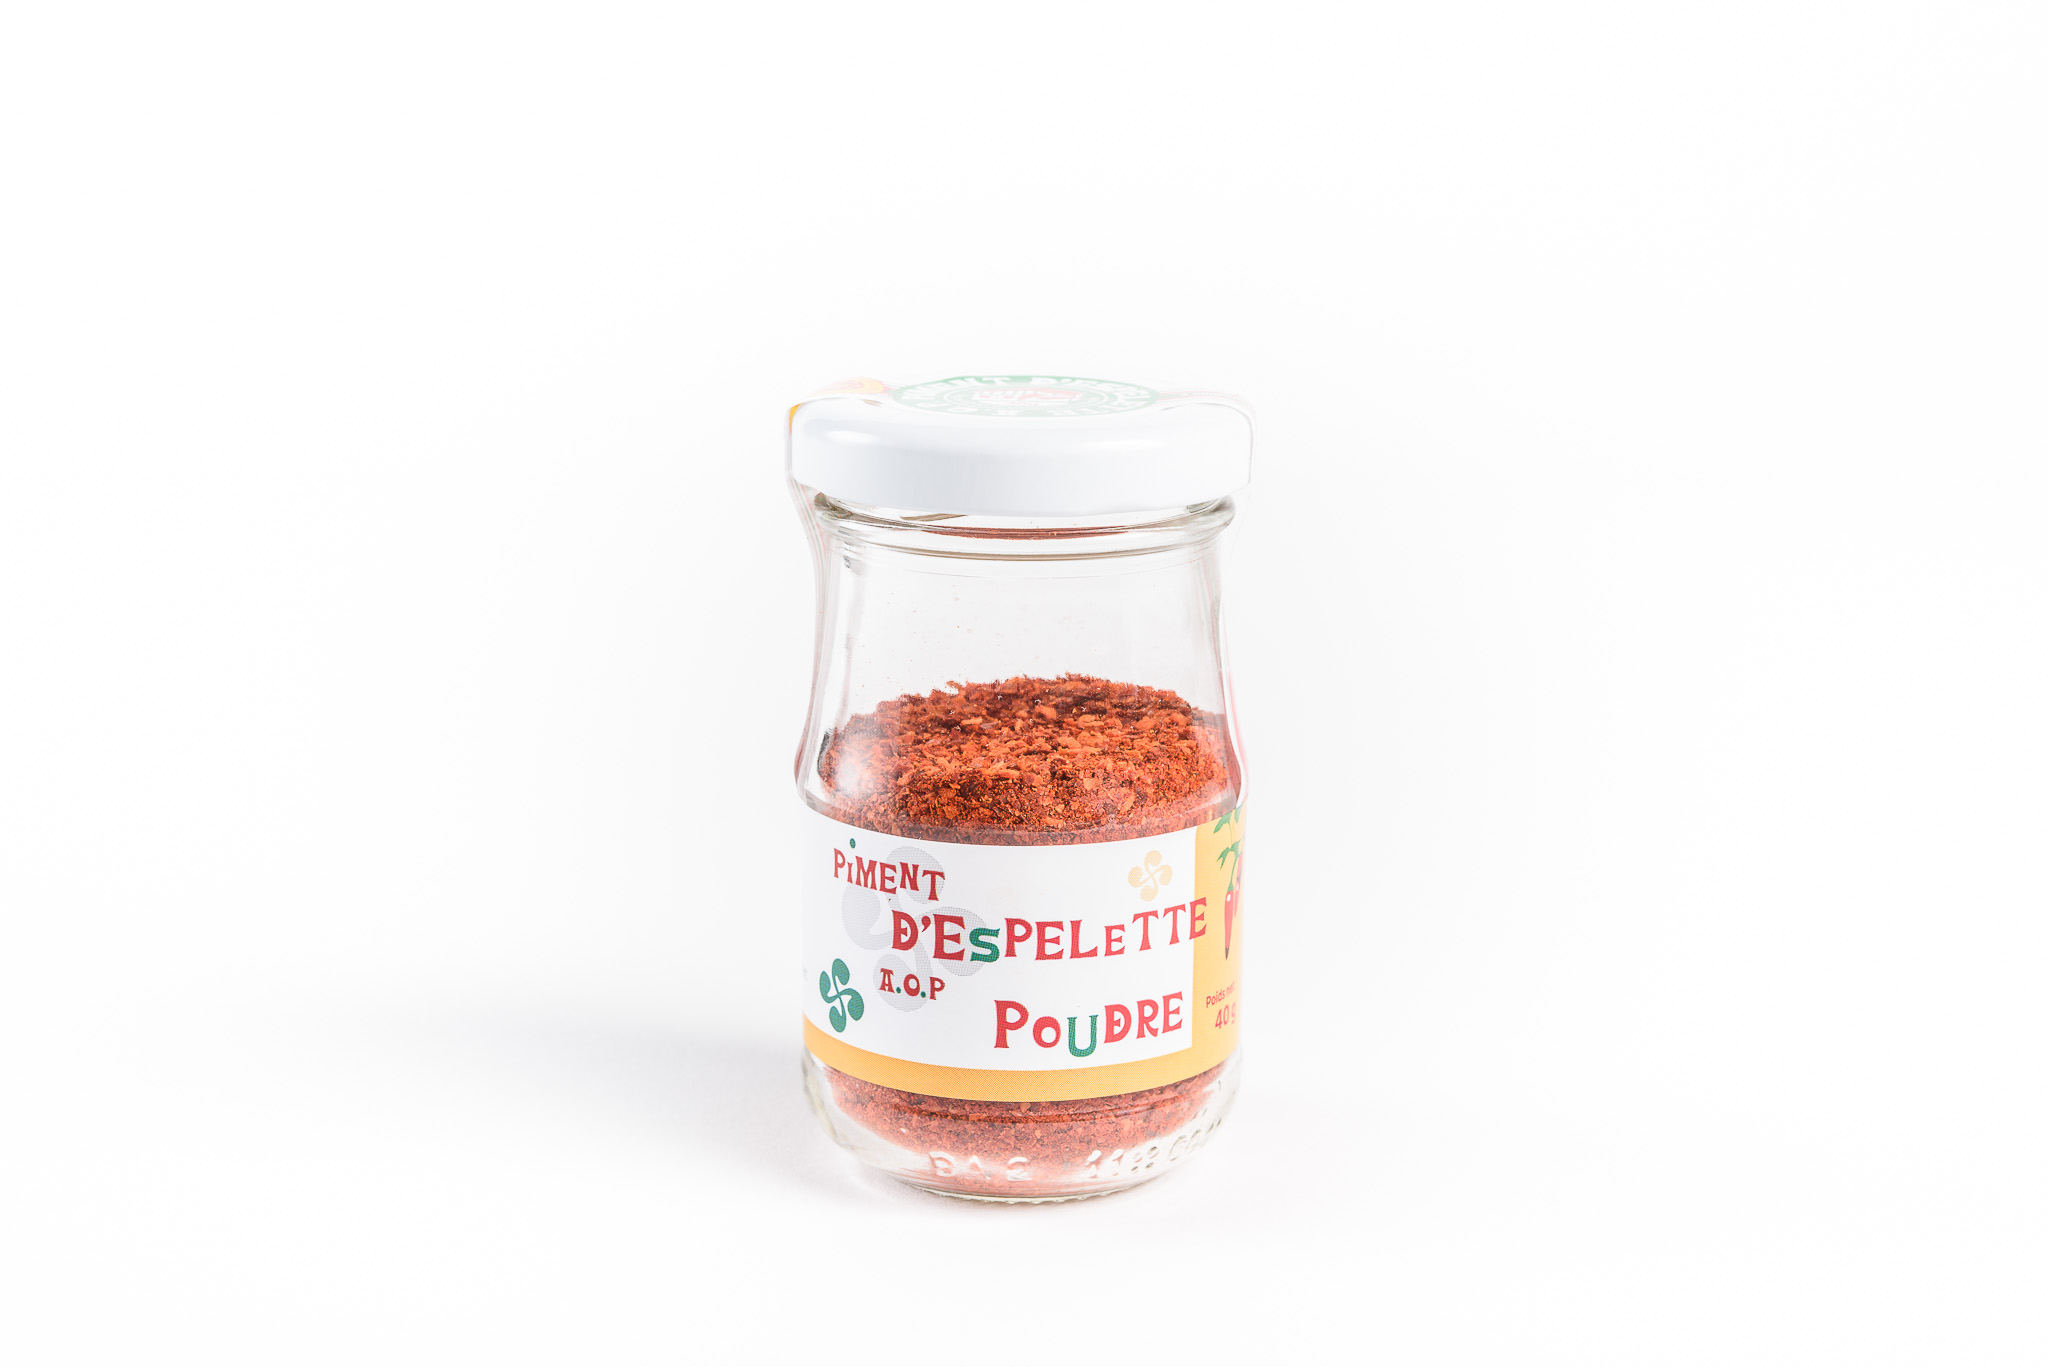 Piment d'Espelette Powder AOP - Manicaretti Imports